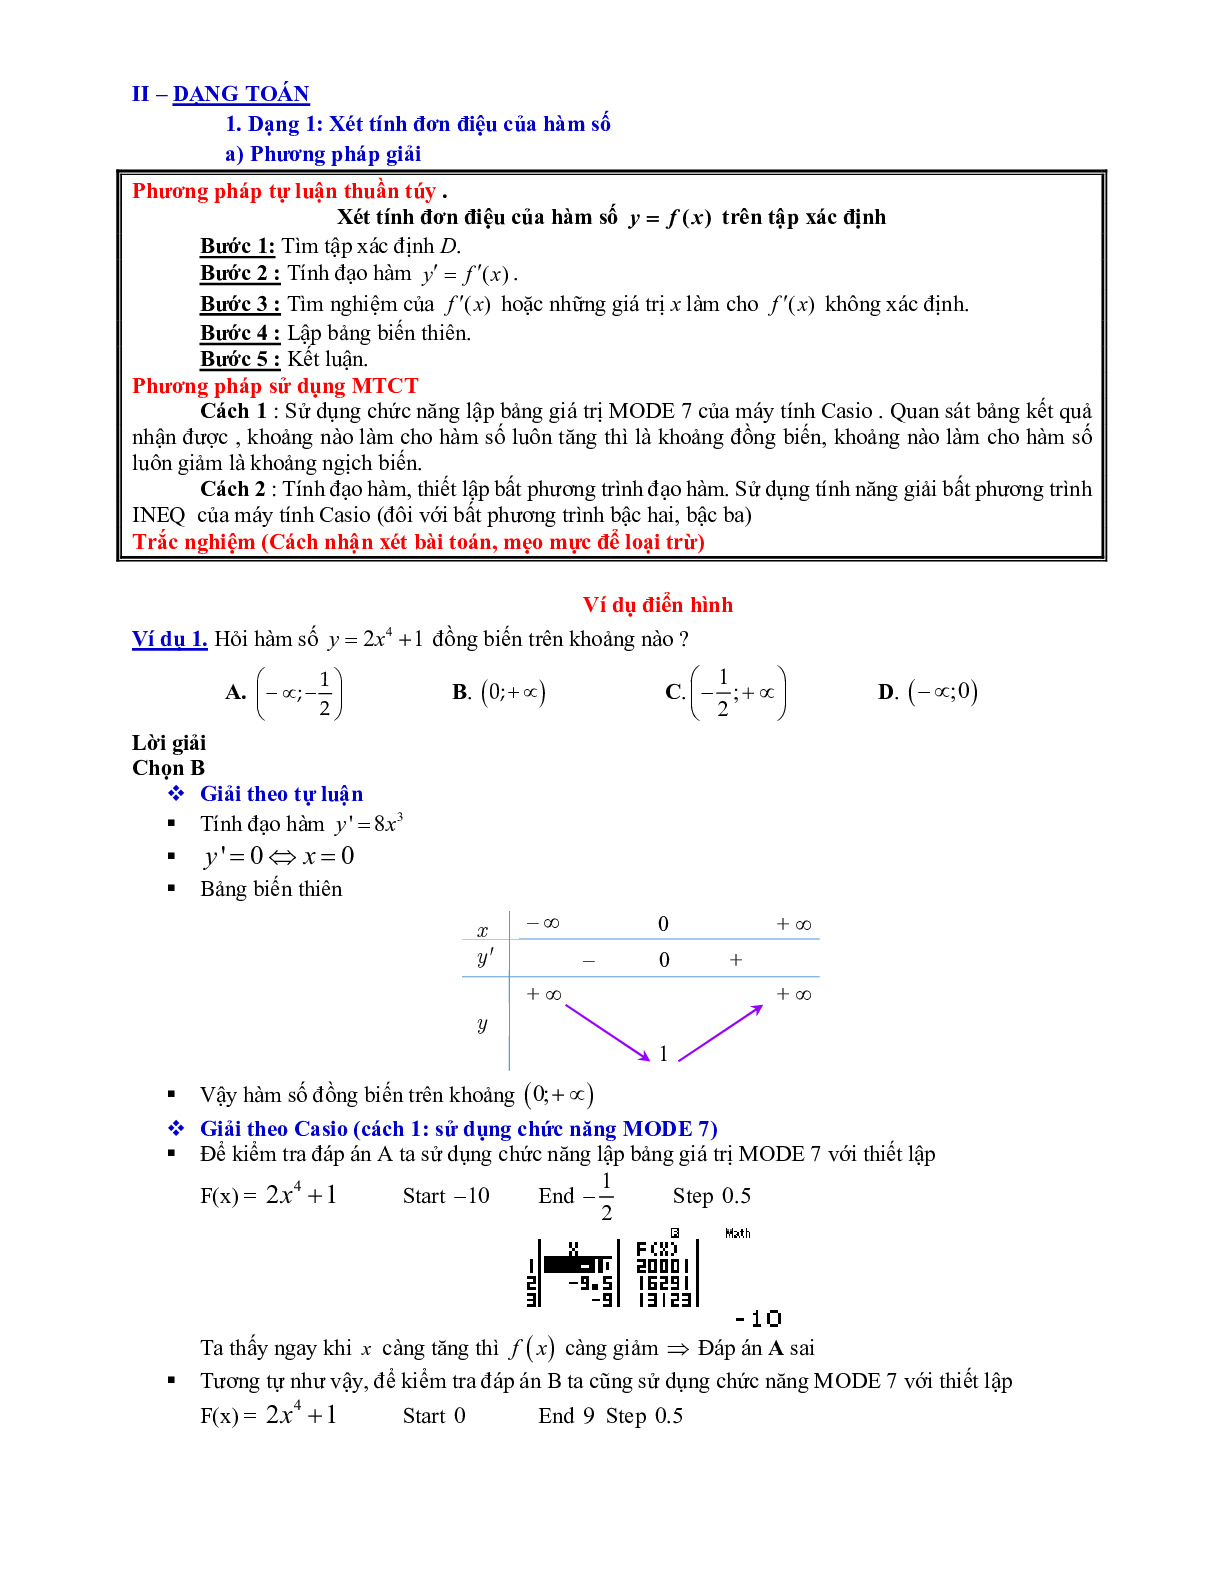 Lý thuyết và bài tập xét tính đơn điệu của hàm số ôn thi THPTQG (trang 7)